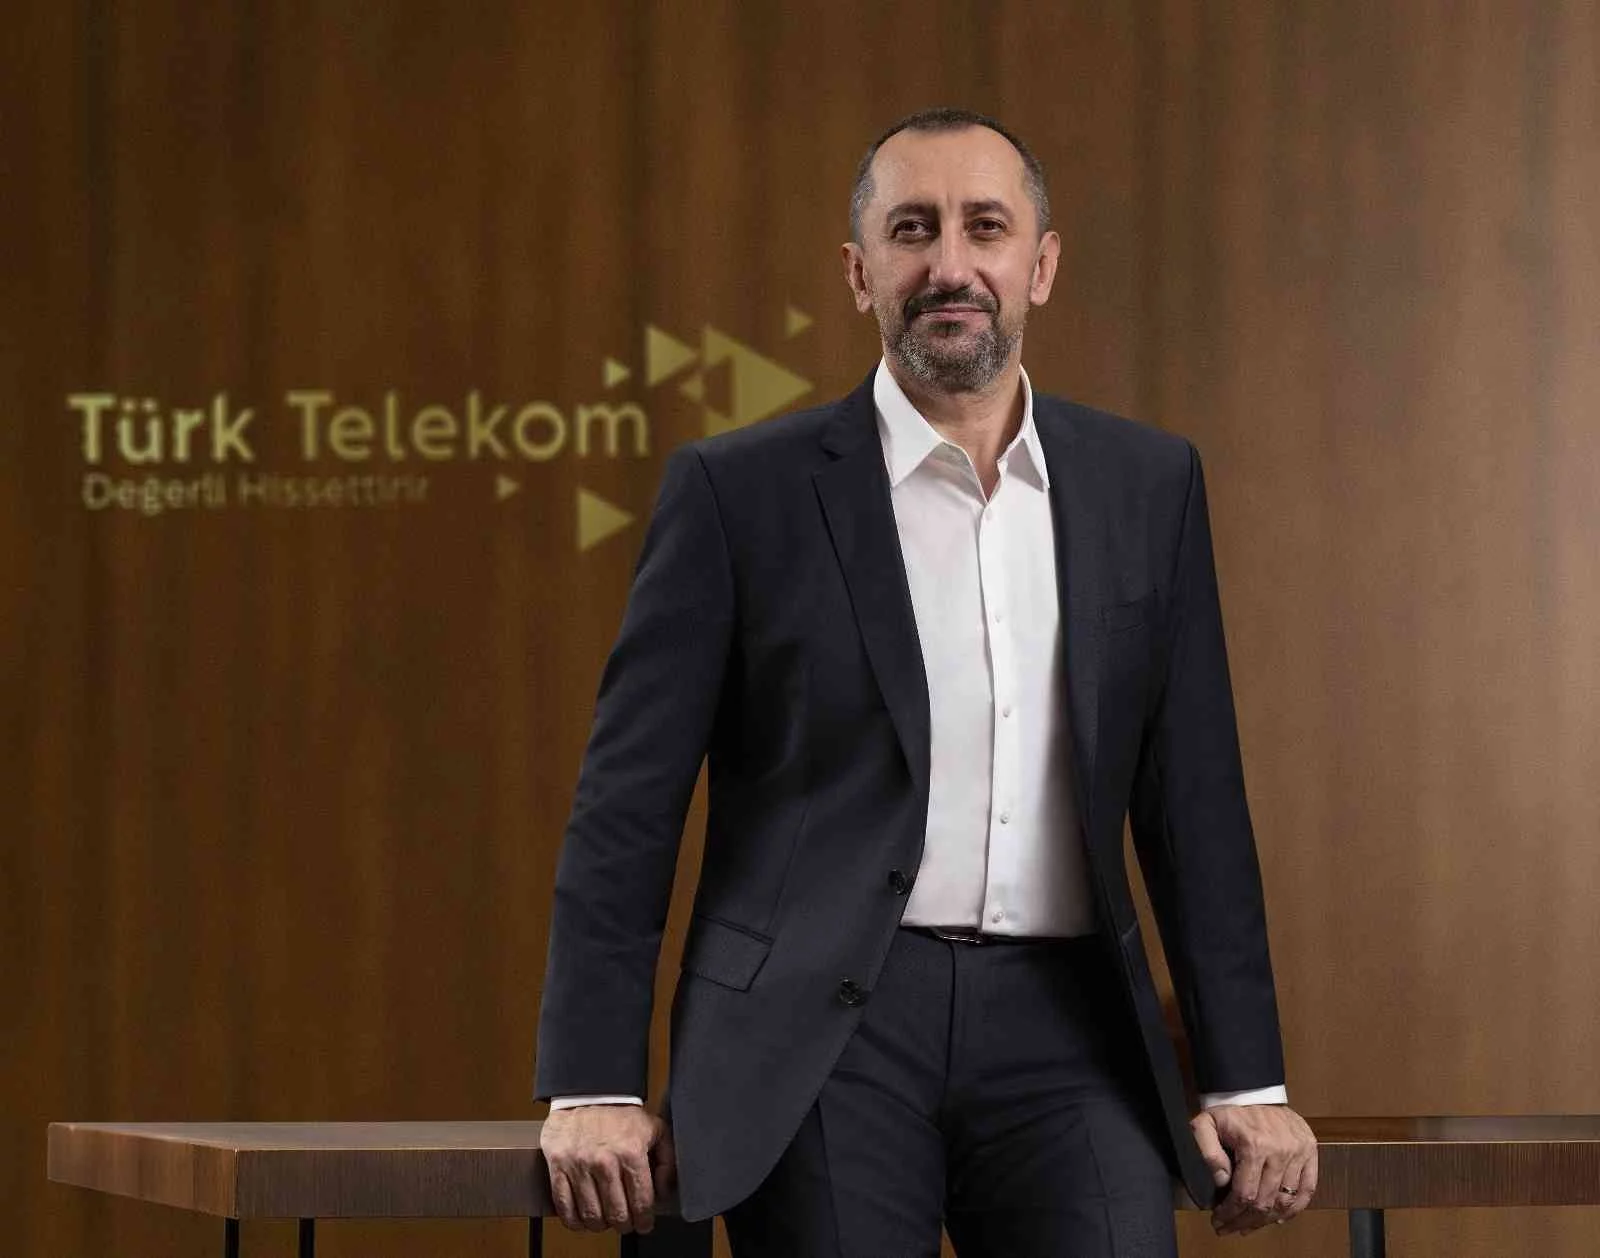 Türk Telekom CEOsu Önal: “Global iş birliklerimizi geliştiriyor, yerli teknolojileri dünyaya tanıtıyoruz”